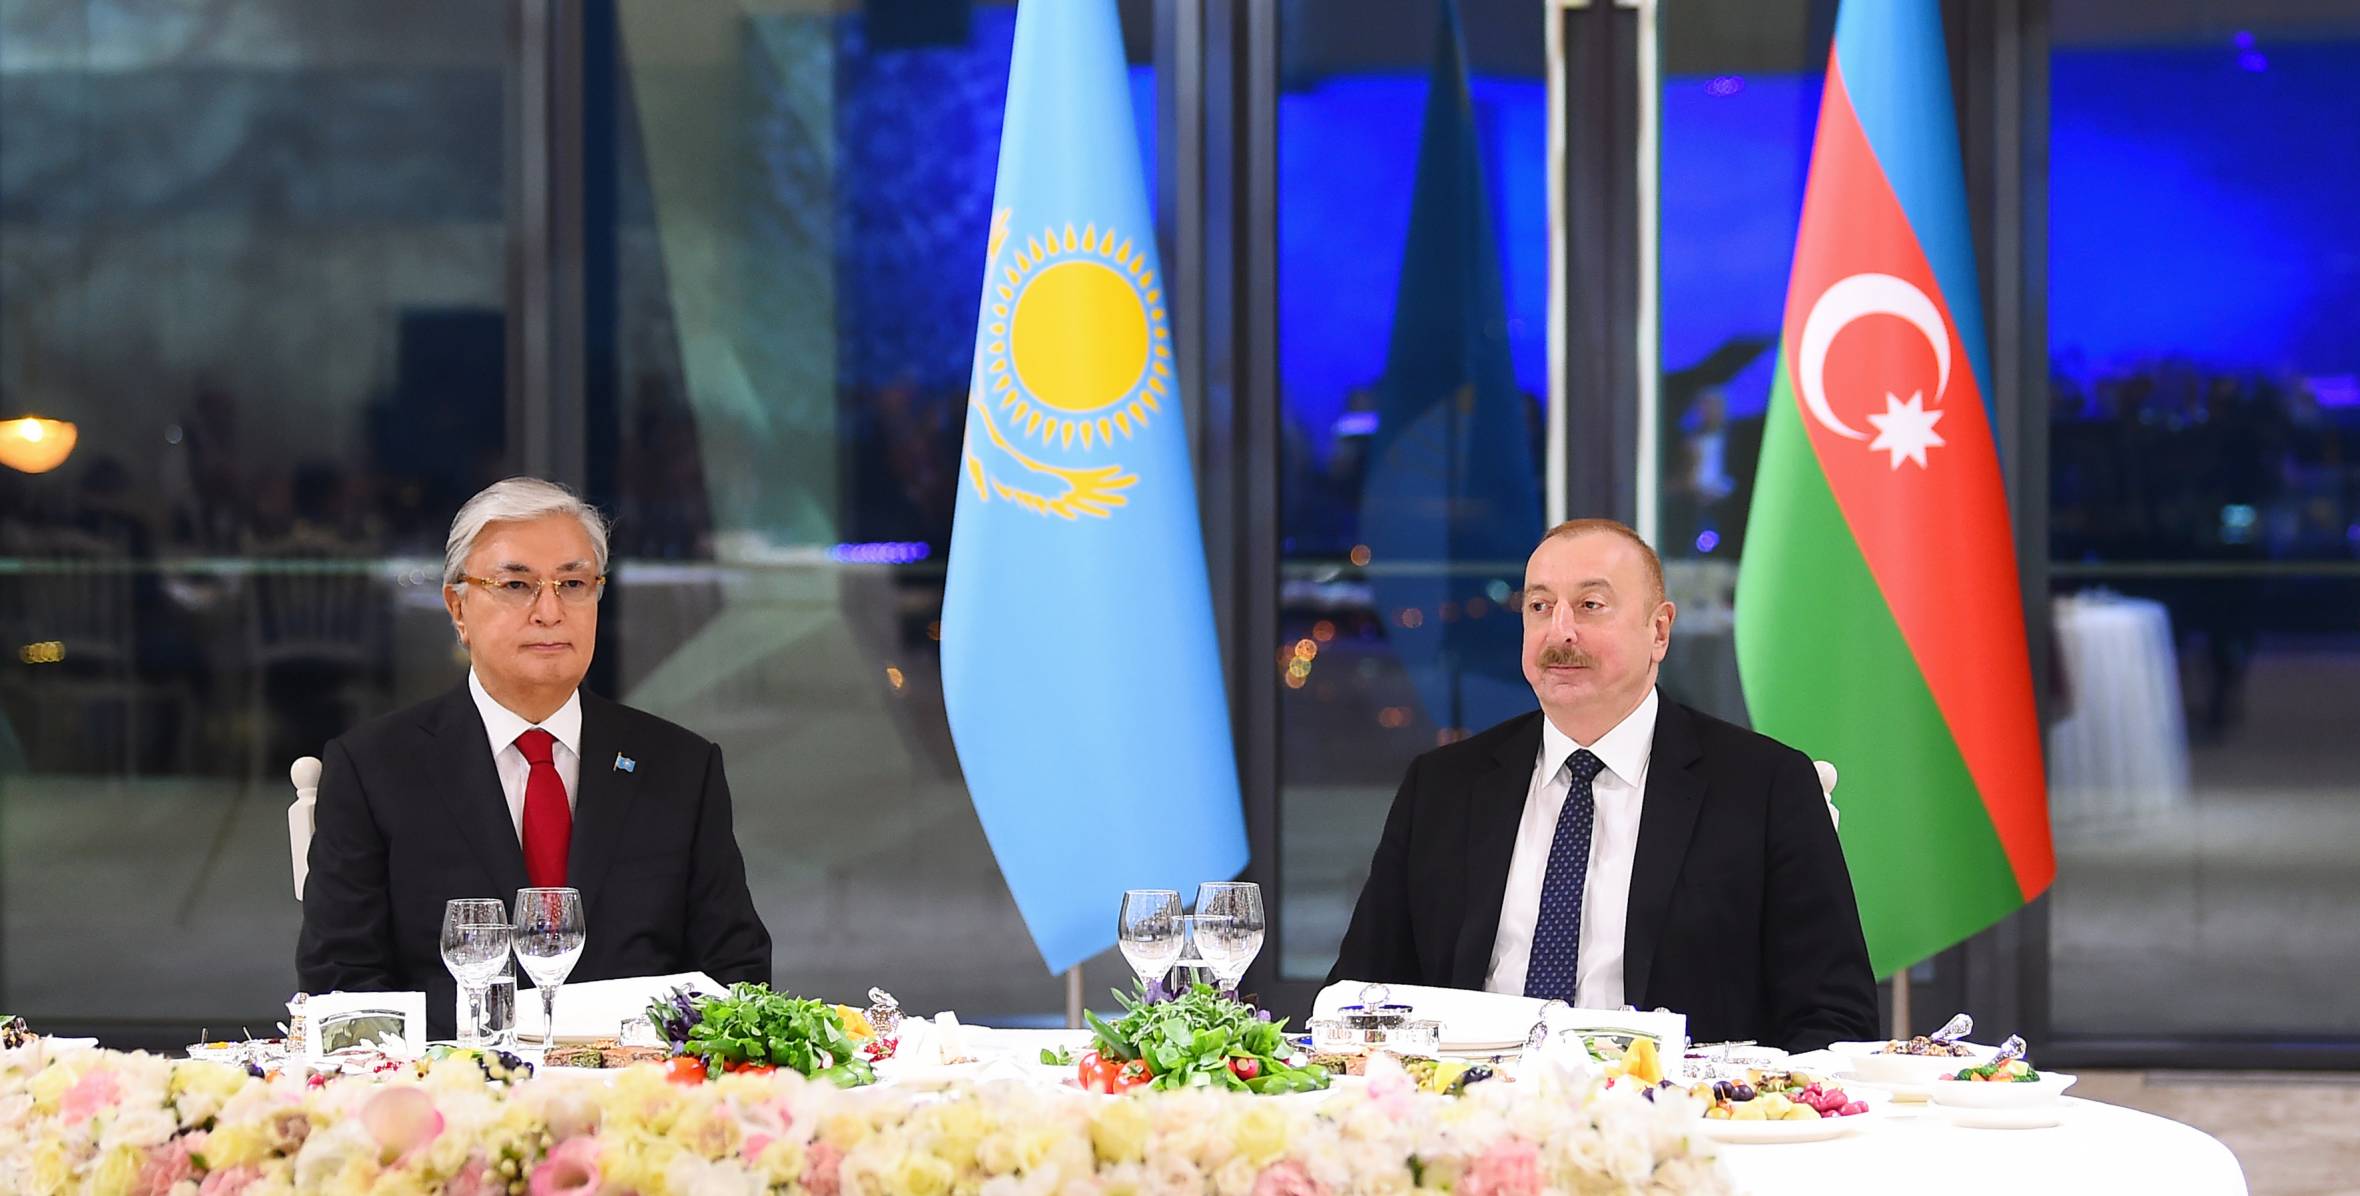 От имени Ильхама Алиева был дан государственный прием в честь Президента Республики Казахстан Касым-Жомарта Токаева